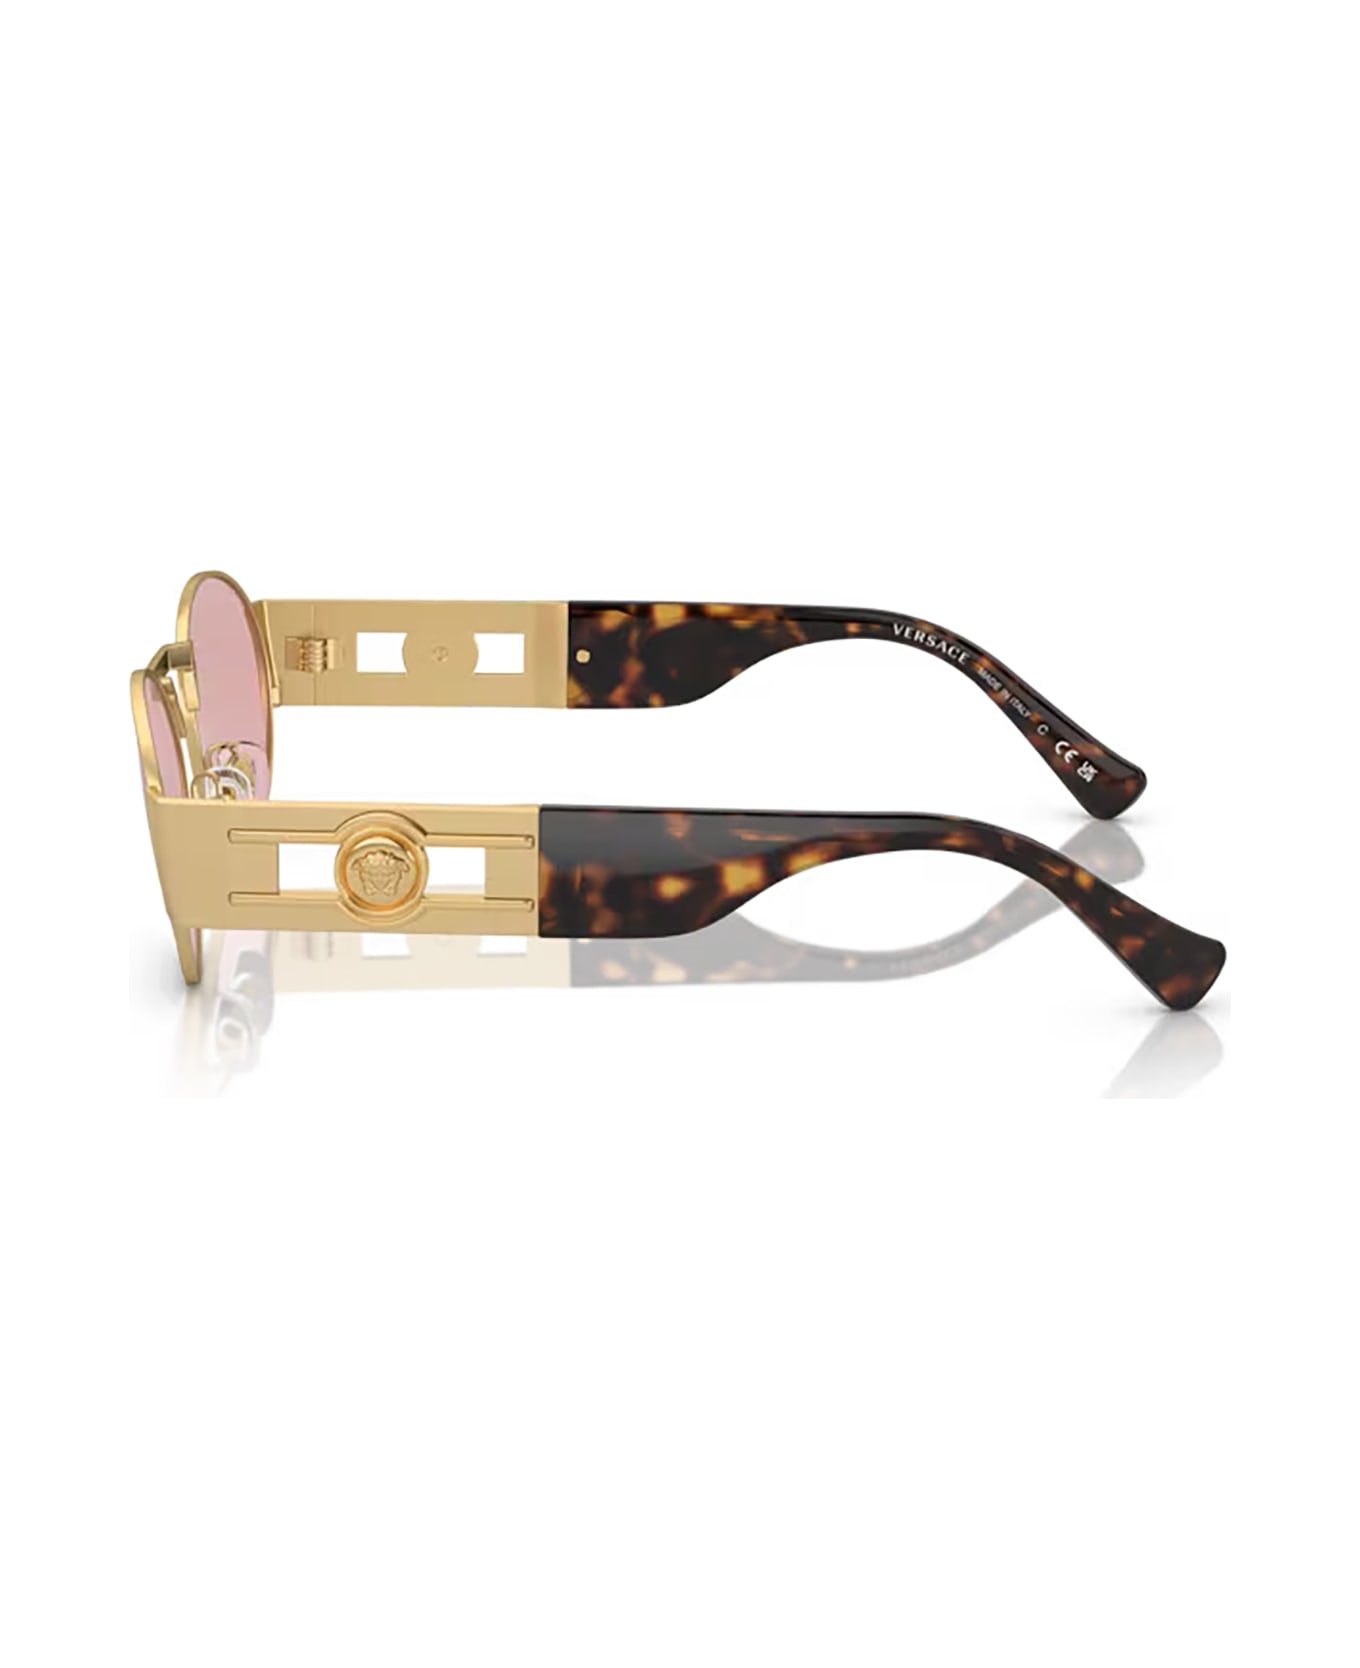 Versace Eyewear Ve2264 Matte Gold Sunglasses - Matte gold